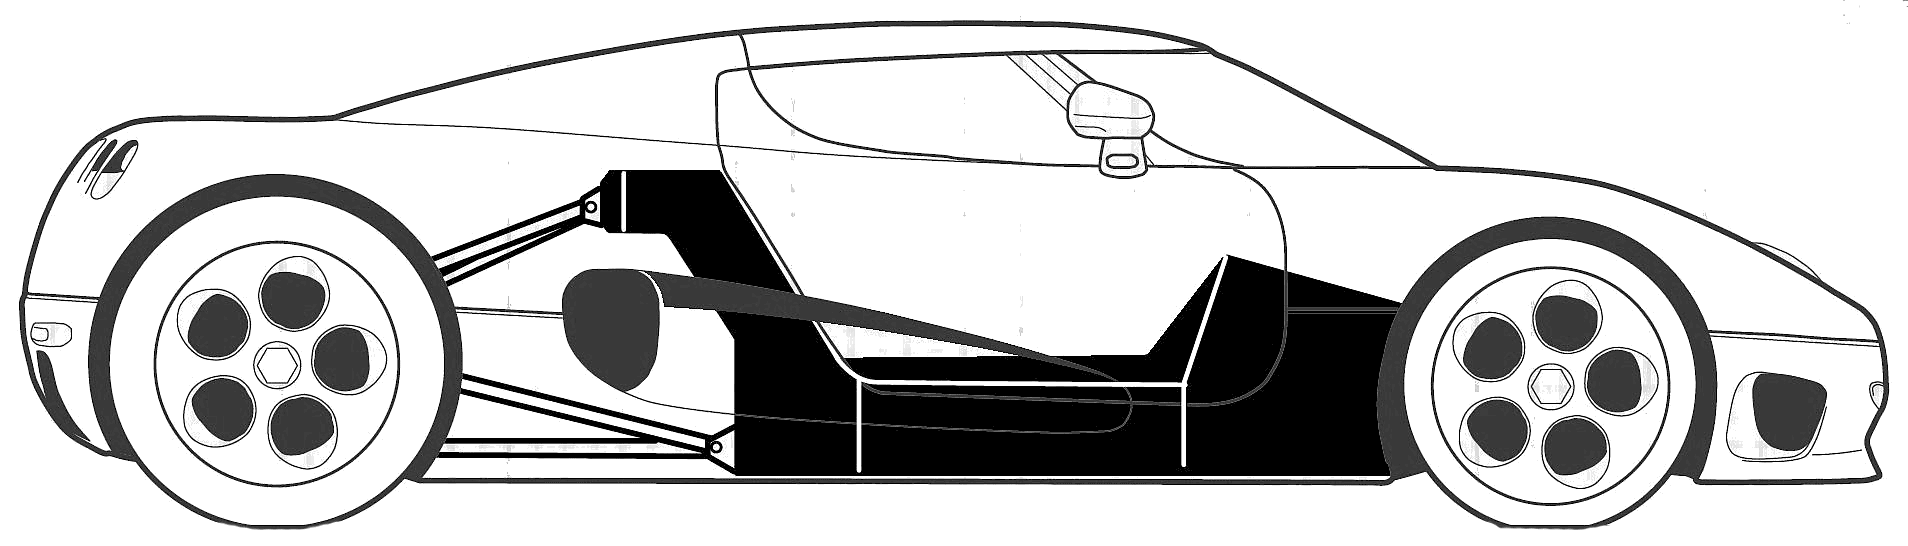 Car Koenigsegg CC 2004